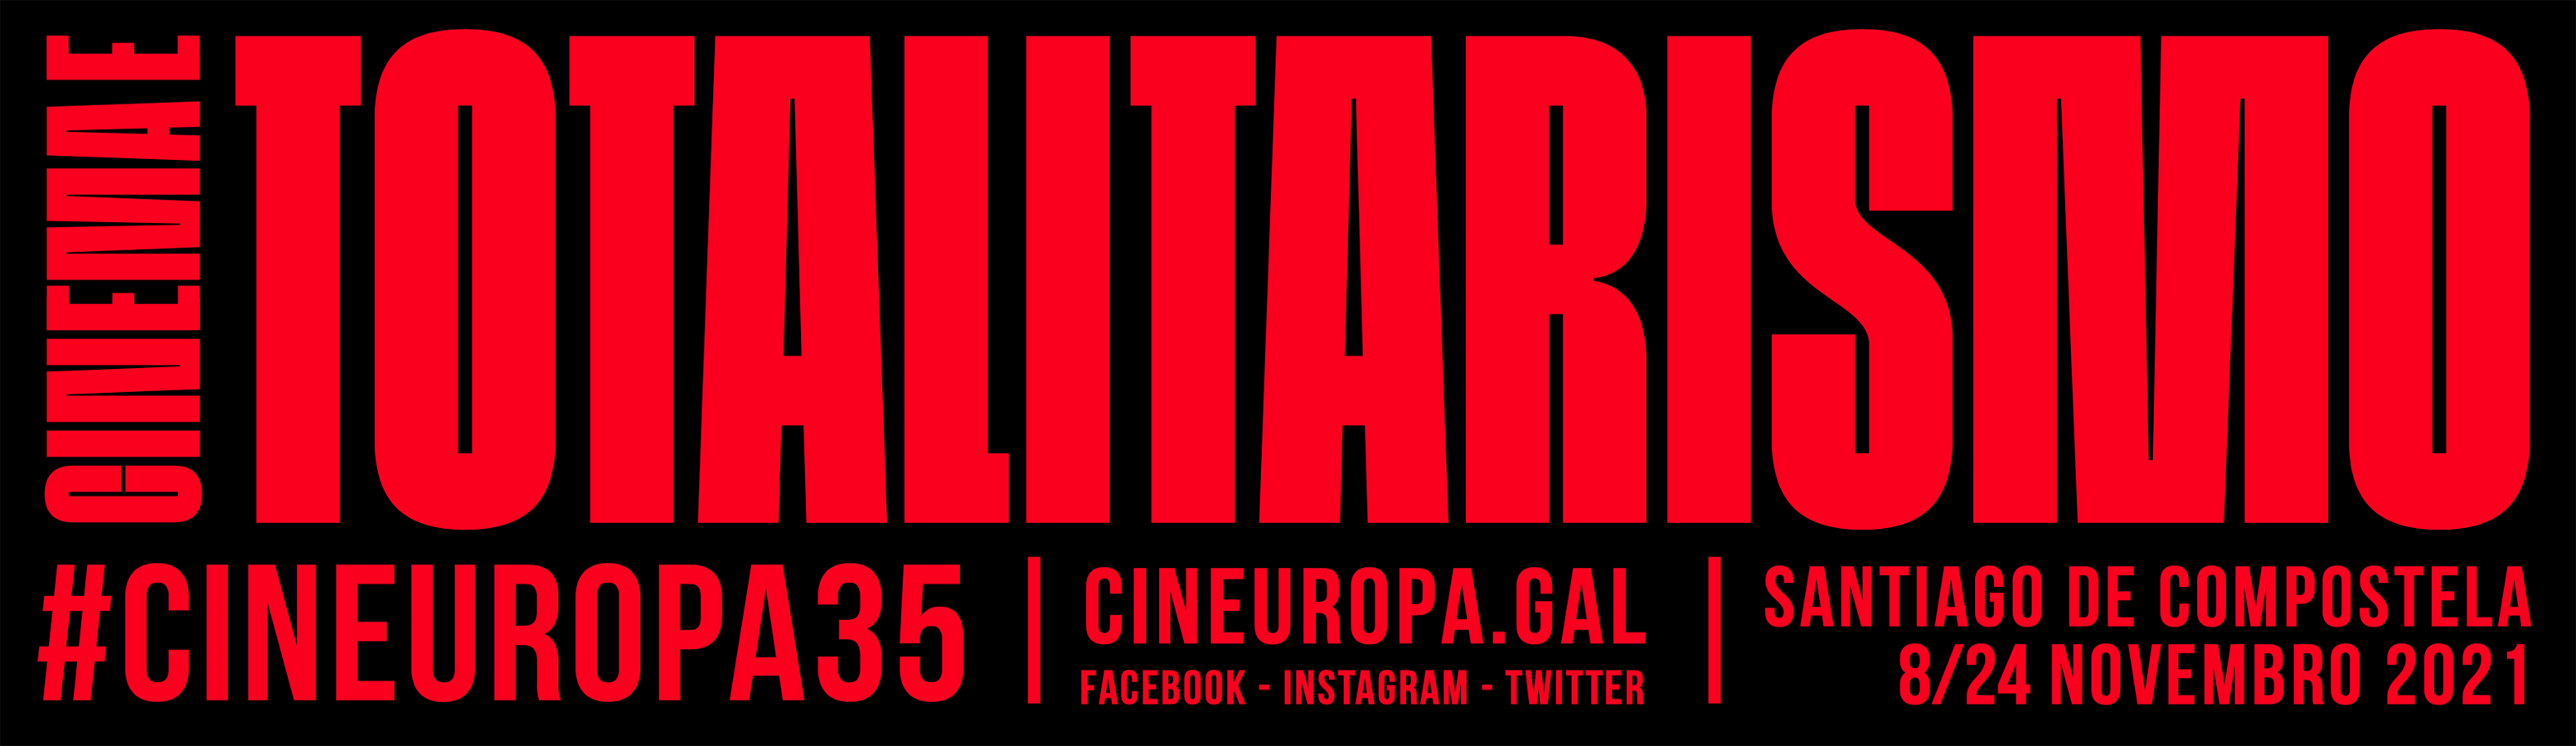 Cineuropa acolle unha mesa redonda sobre cinema e totalitarismo, a temática principal desta edición